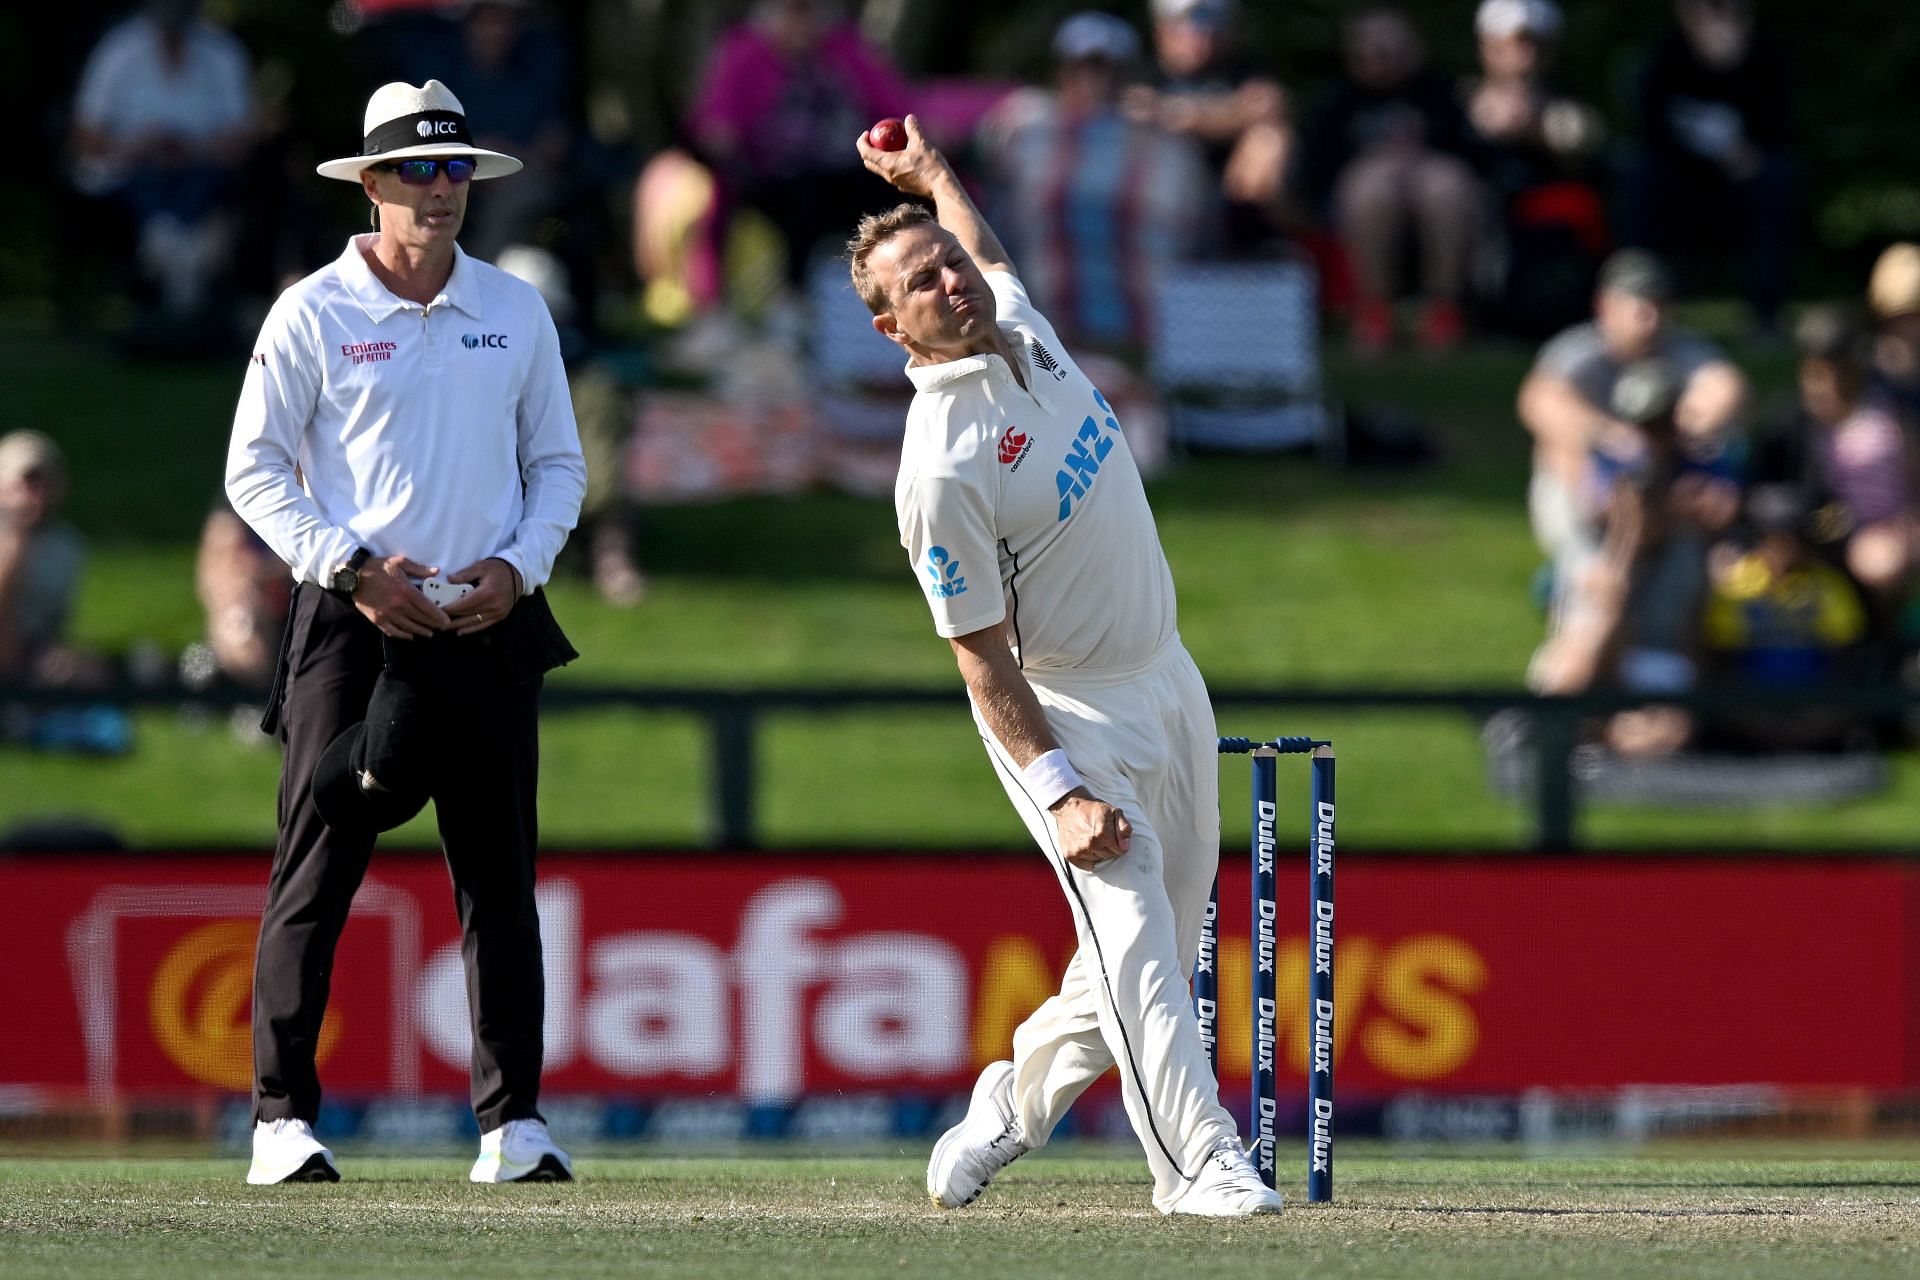 New Zealand v Sri Lanka - 1st Test: Day 3